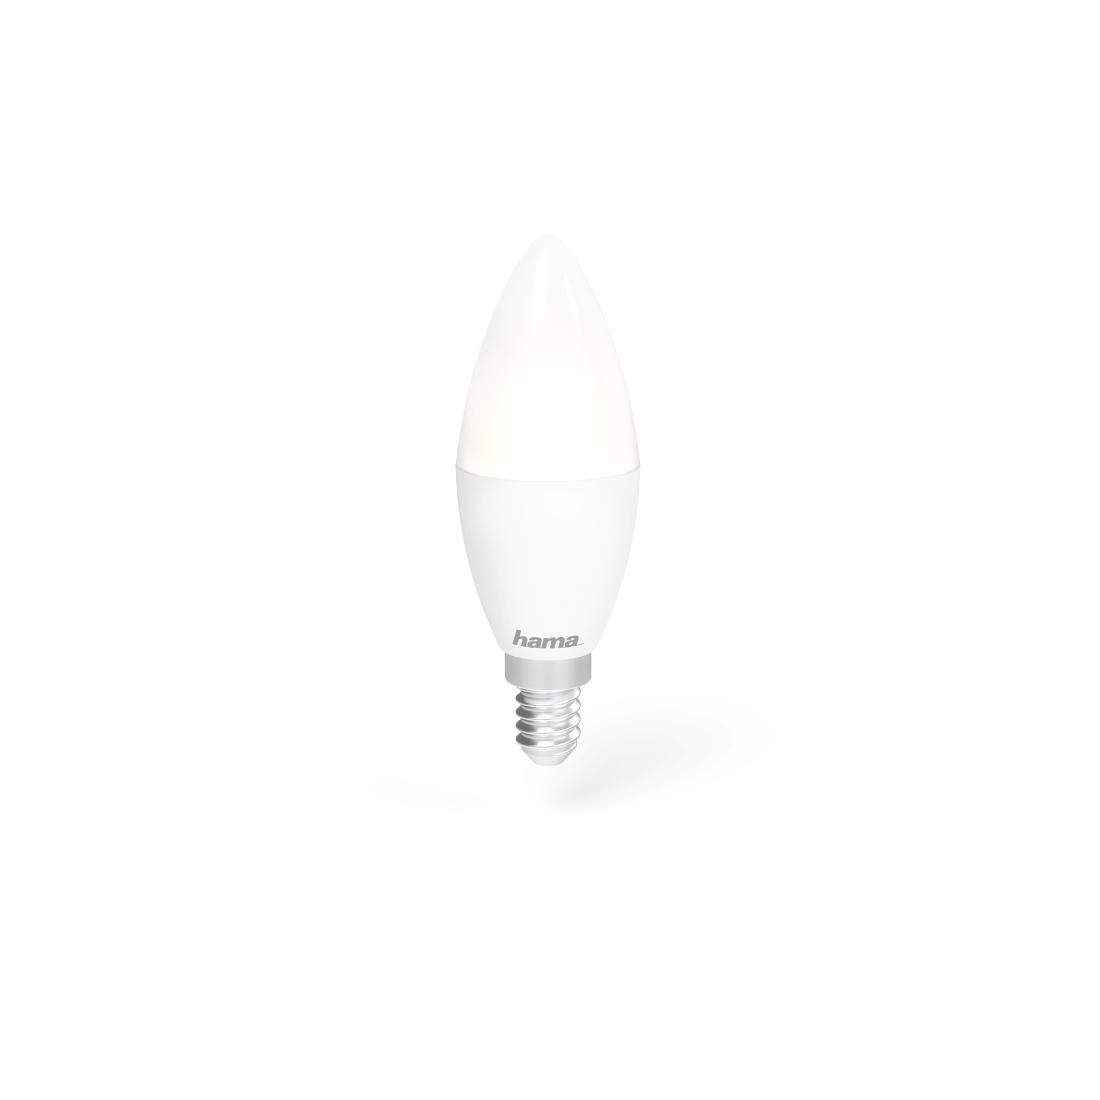 Hama 176559 W128824486 9 Smart Lighting Smart Bulb 